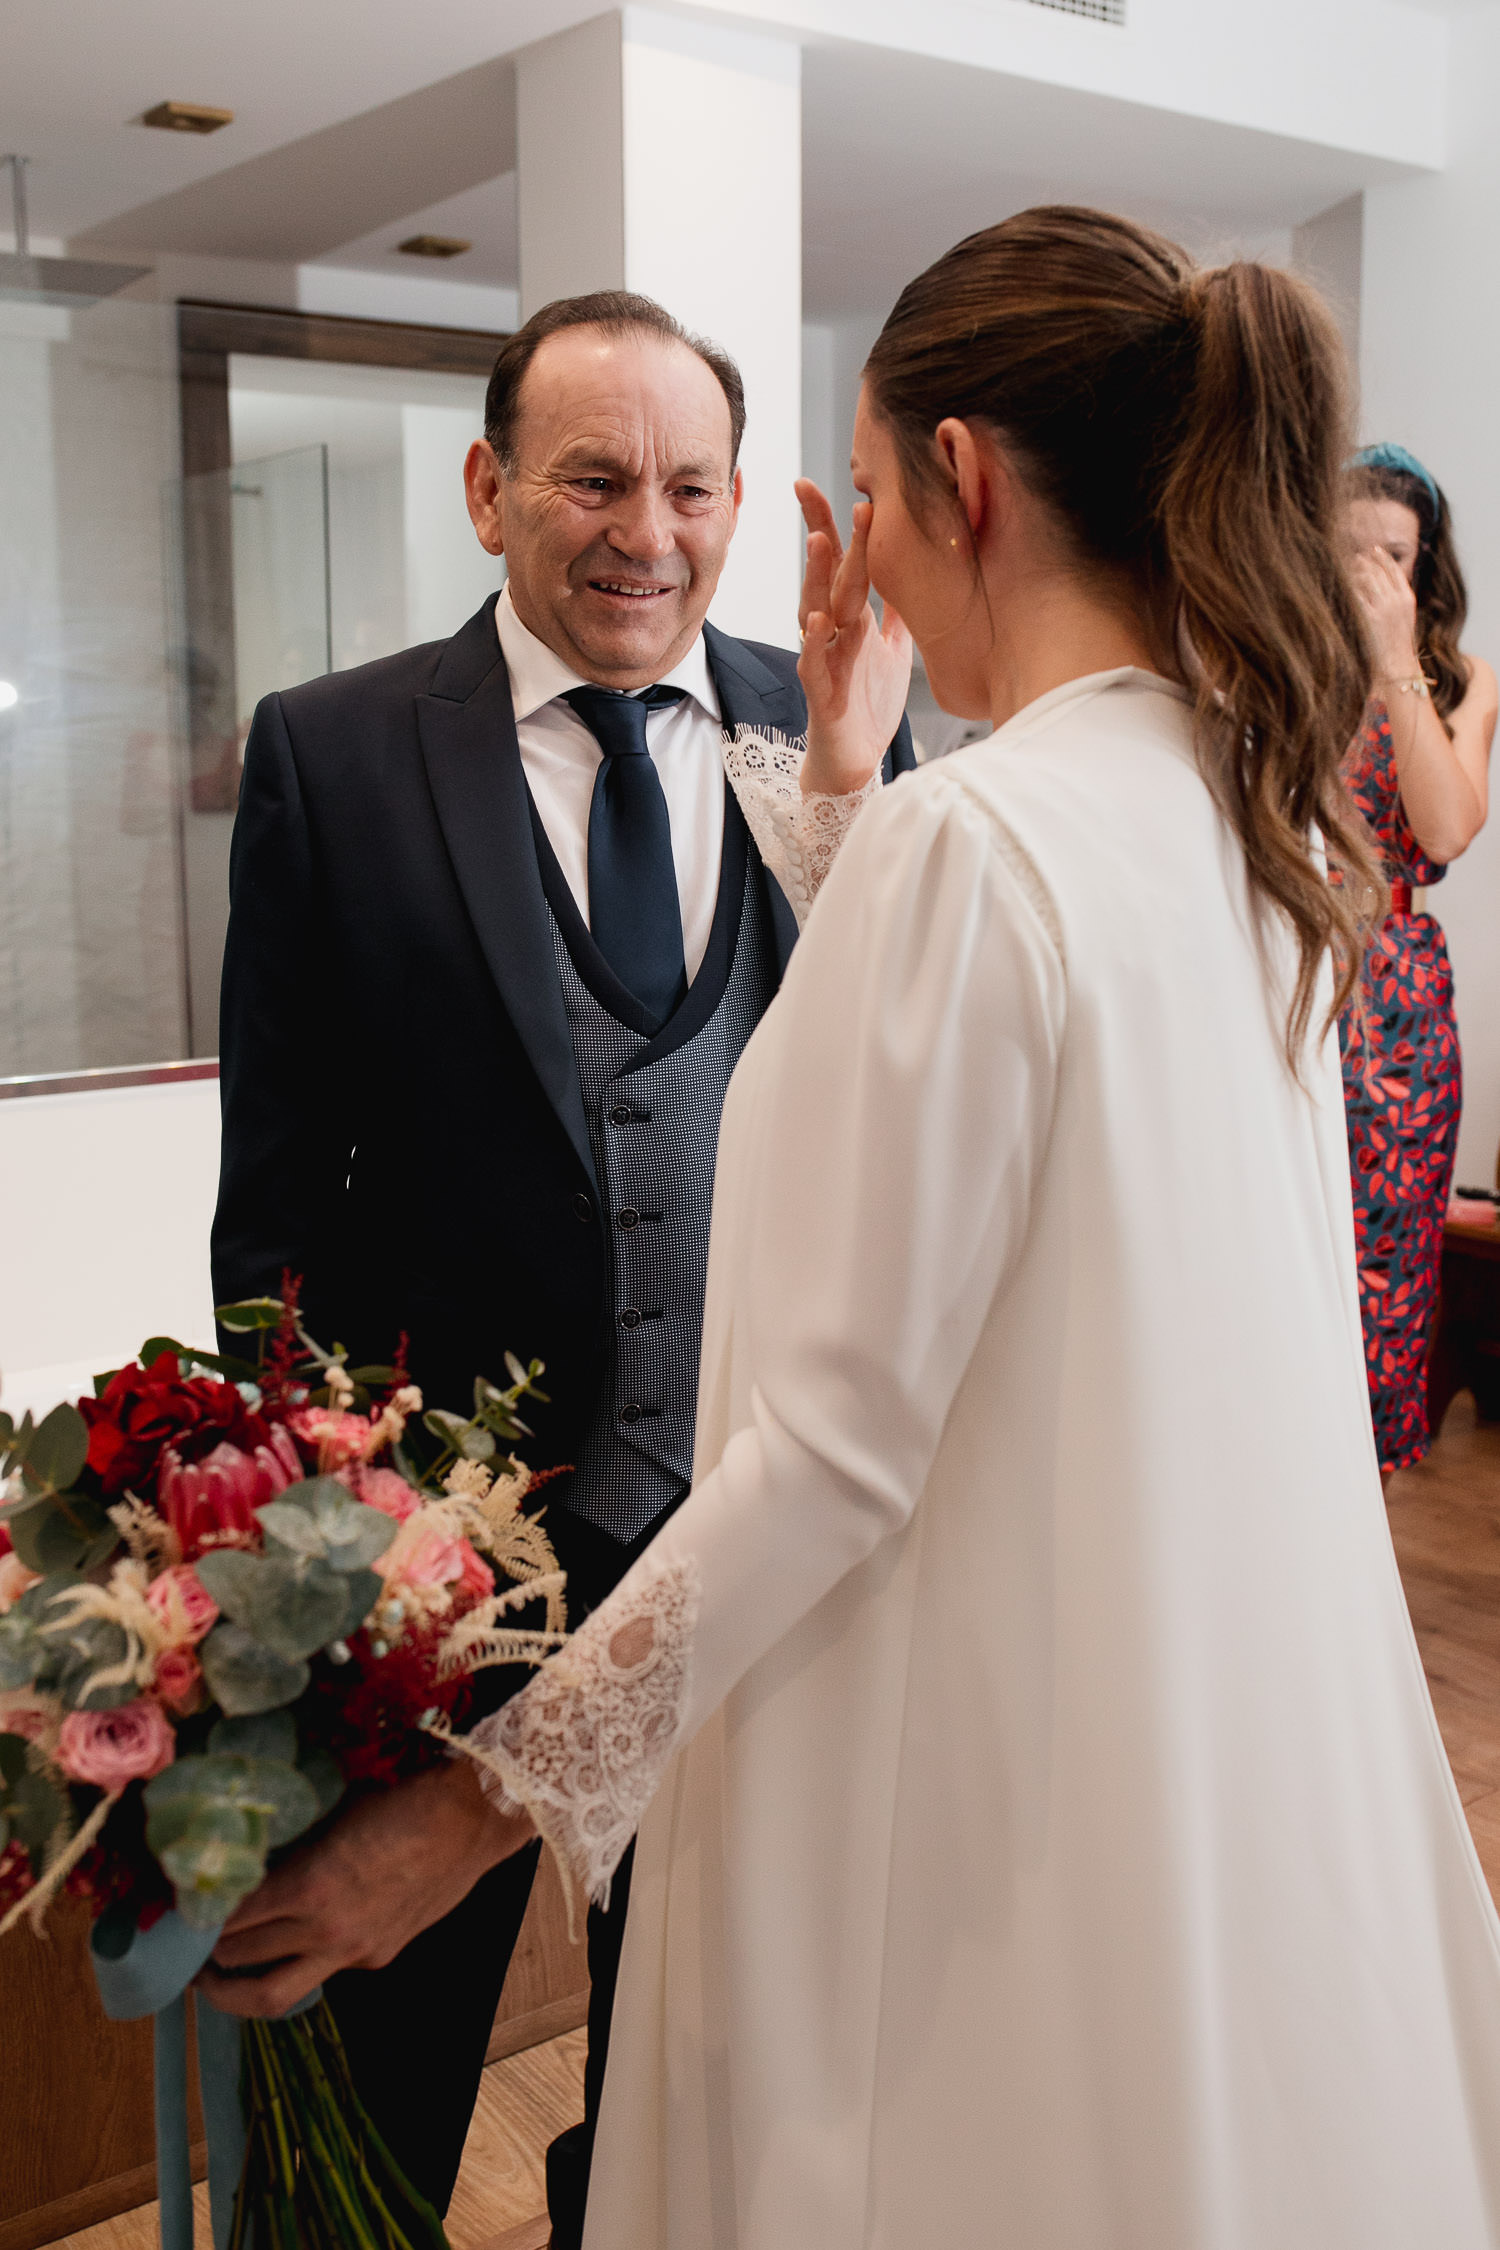 La novia se emociona al ver a su padre recién vestida de novia, mostrando una sonrisa brillante y lágrimas de felicidad mientras se miran en un momento conmovedor antes de la ceremonia.